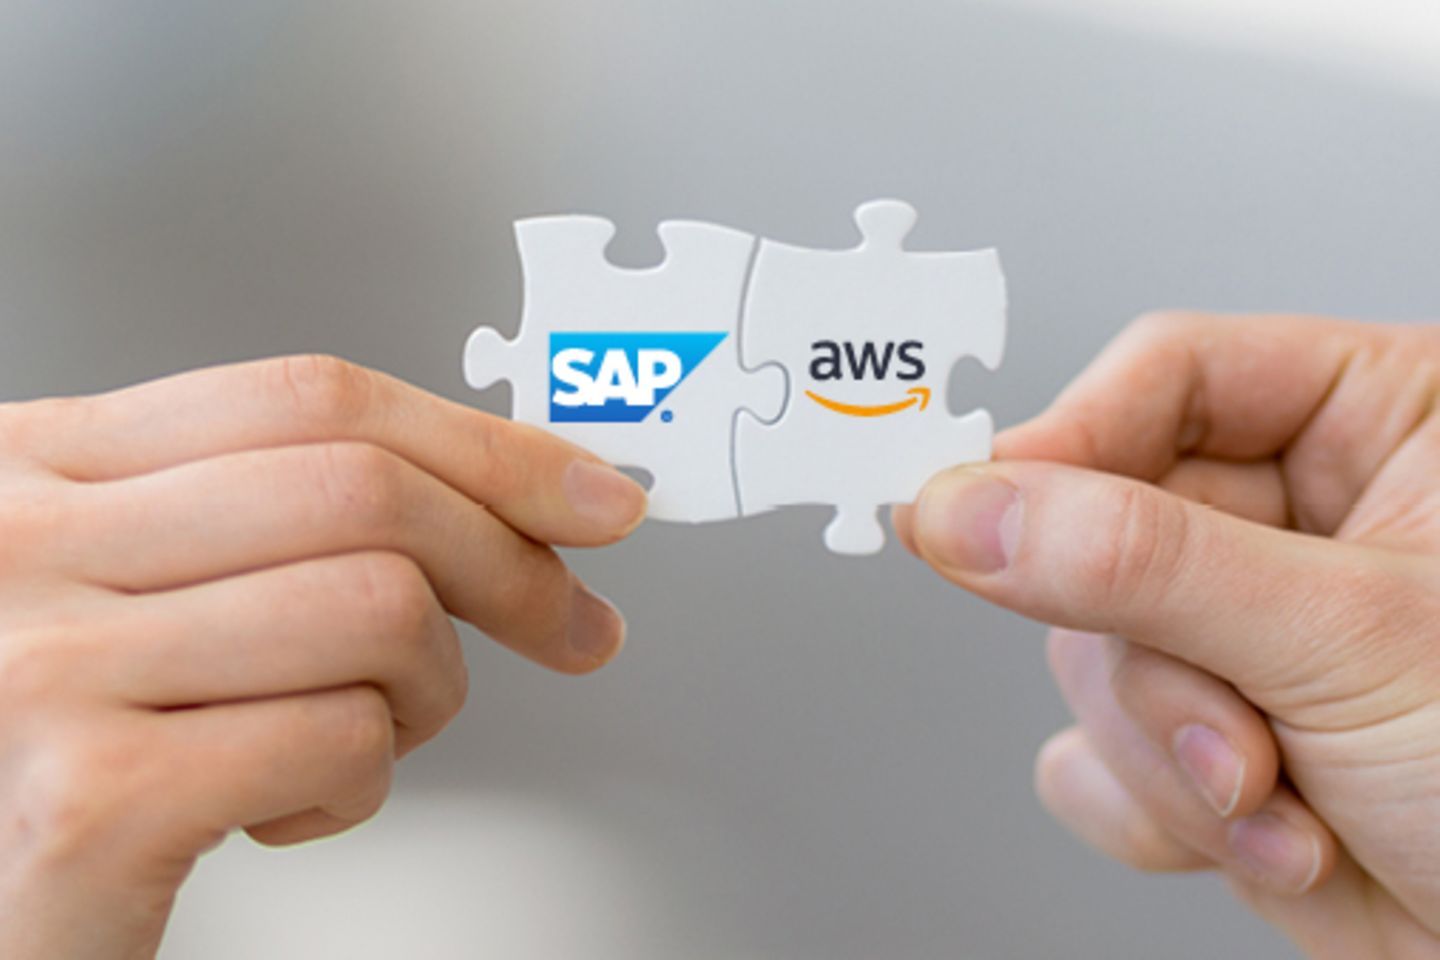 Hände halten Puzzleteile mit SAP und AWS Logos passend aneinander.